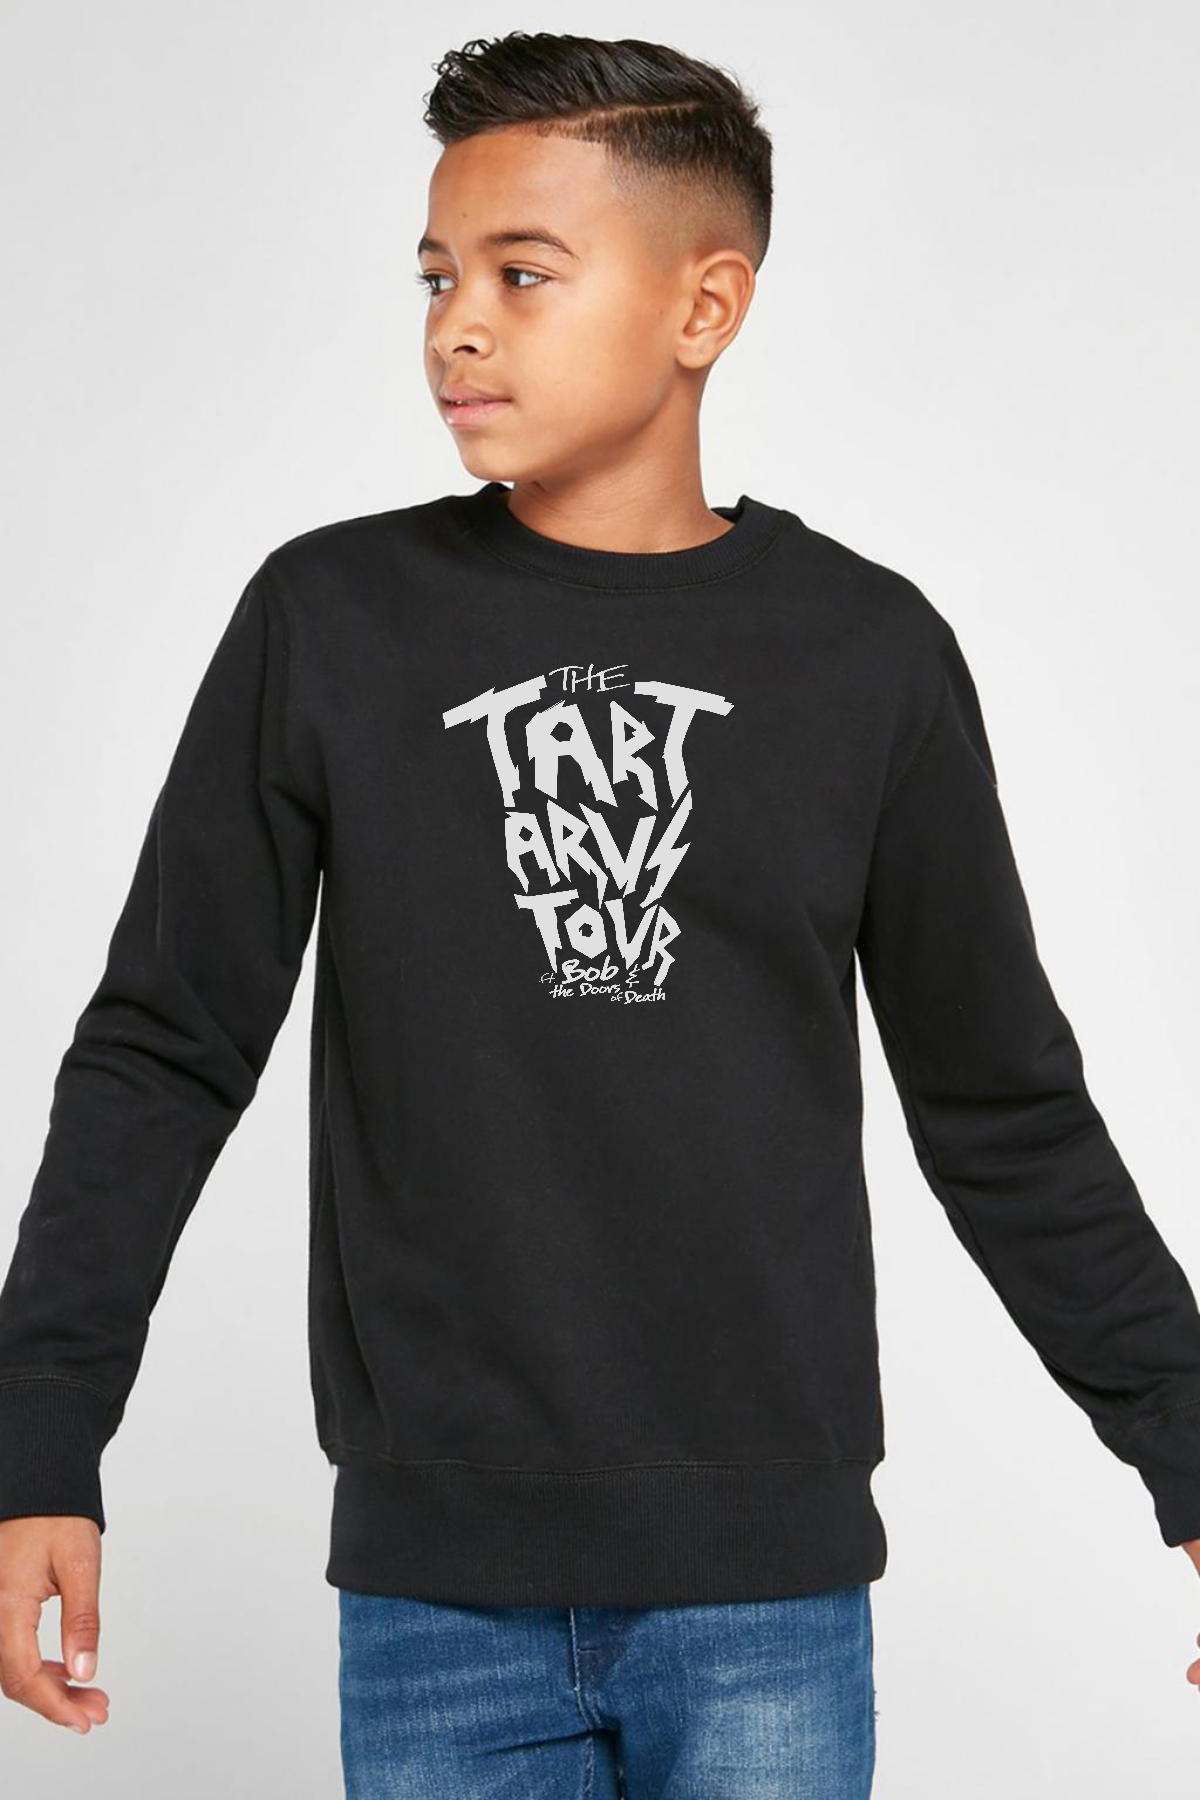 Percy Jackson The Tartarus Tour Siyah Çocuk 2ip Sweatshirt